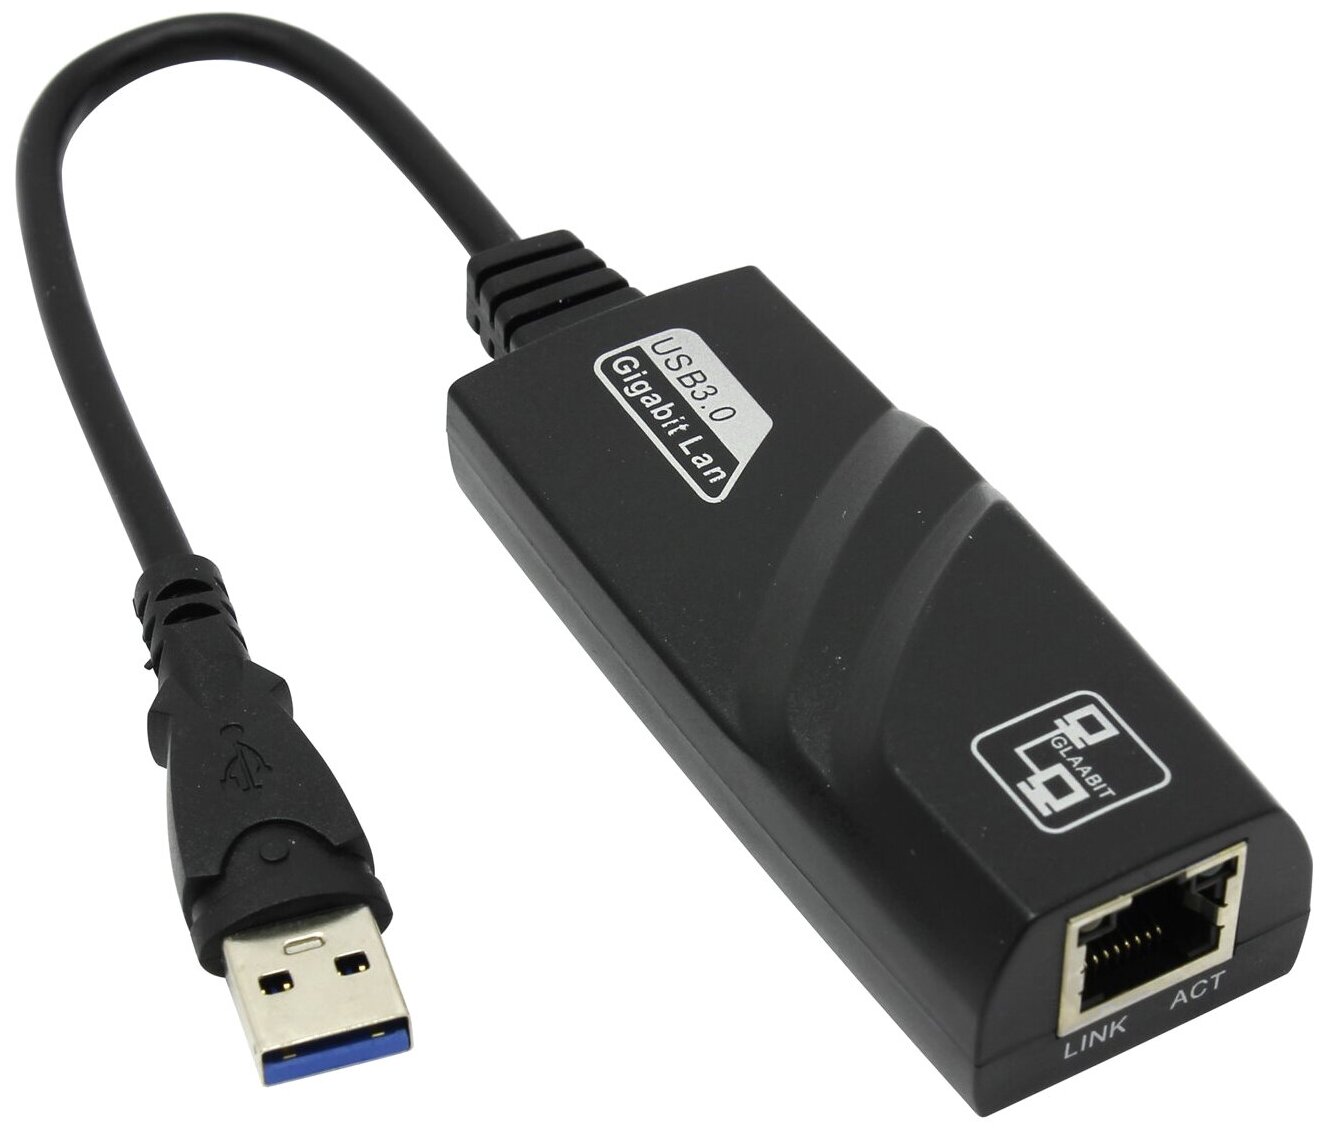 Сетевой адаптер USB 3.0 Gigabit Ethernet, 10/100/1000 Мбит/с, модель UsbGL, Espada (RJ45 LAN сетевая карта)